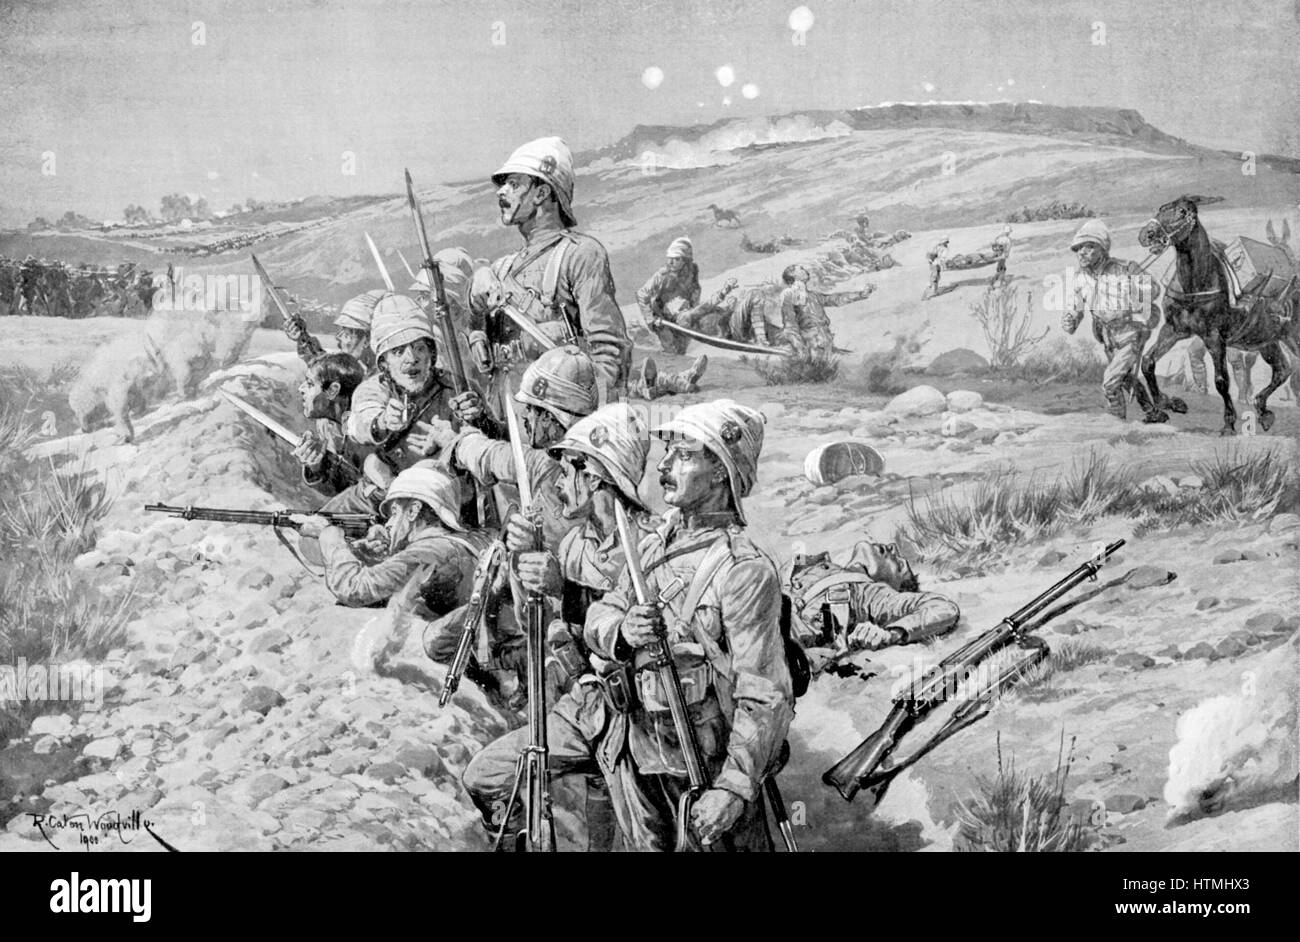 Burenkrieg: Belagerung von Ladysmith von Buren, 1. November 1899 - 28. Februar 1900: Verteidigung der britische Truppen in Schützengräben Befestigung Bajonette in Vorbereitung, um den Angriff abzuwehren Stockfoto